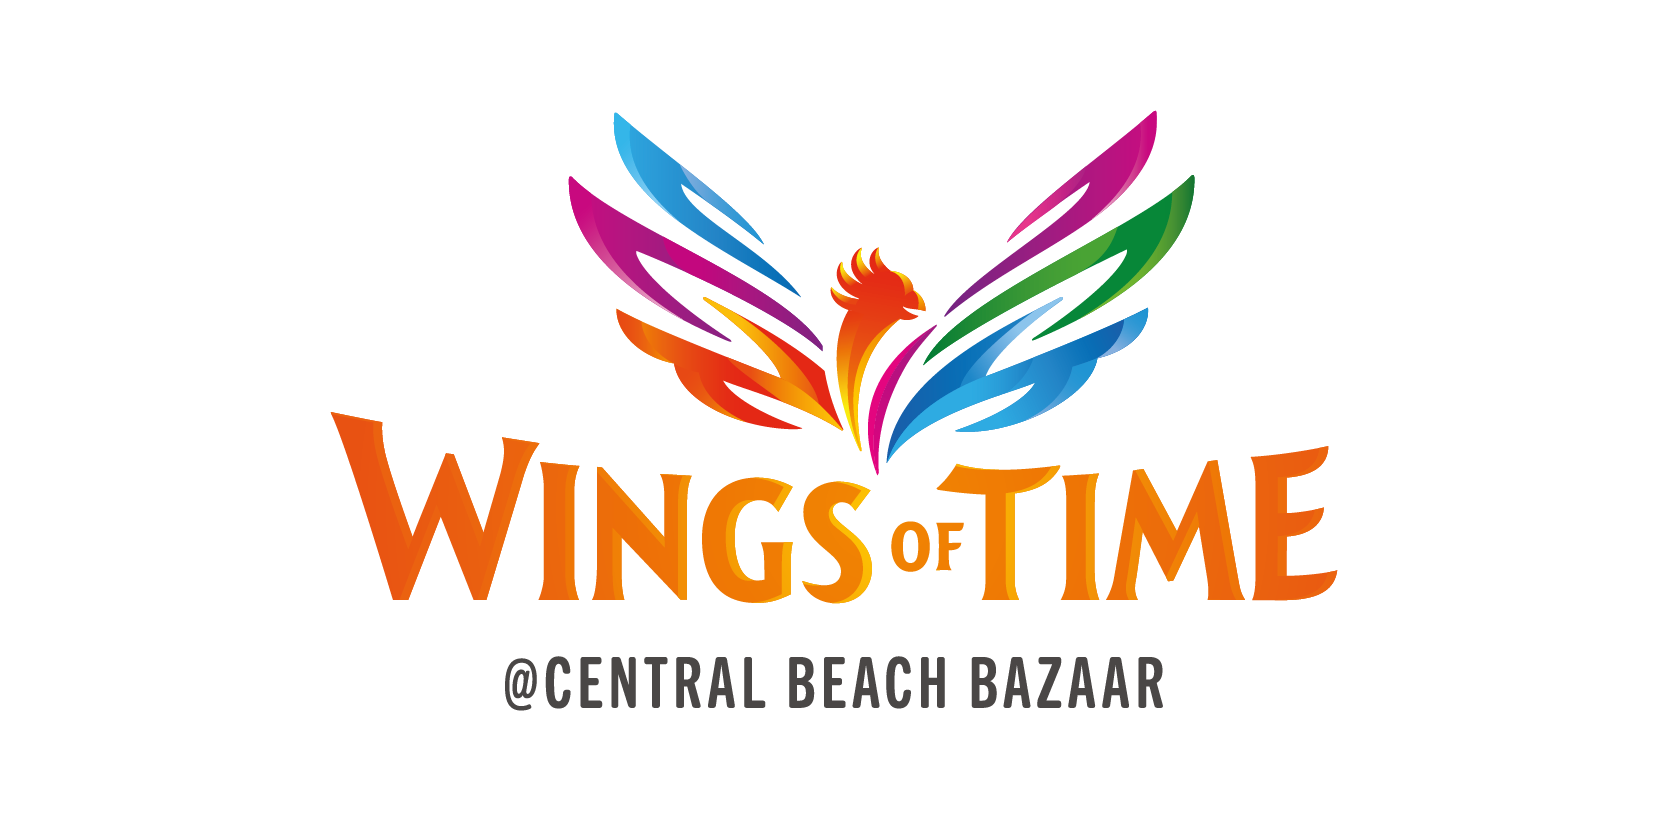 Logotipo de las alas del tiempo